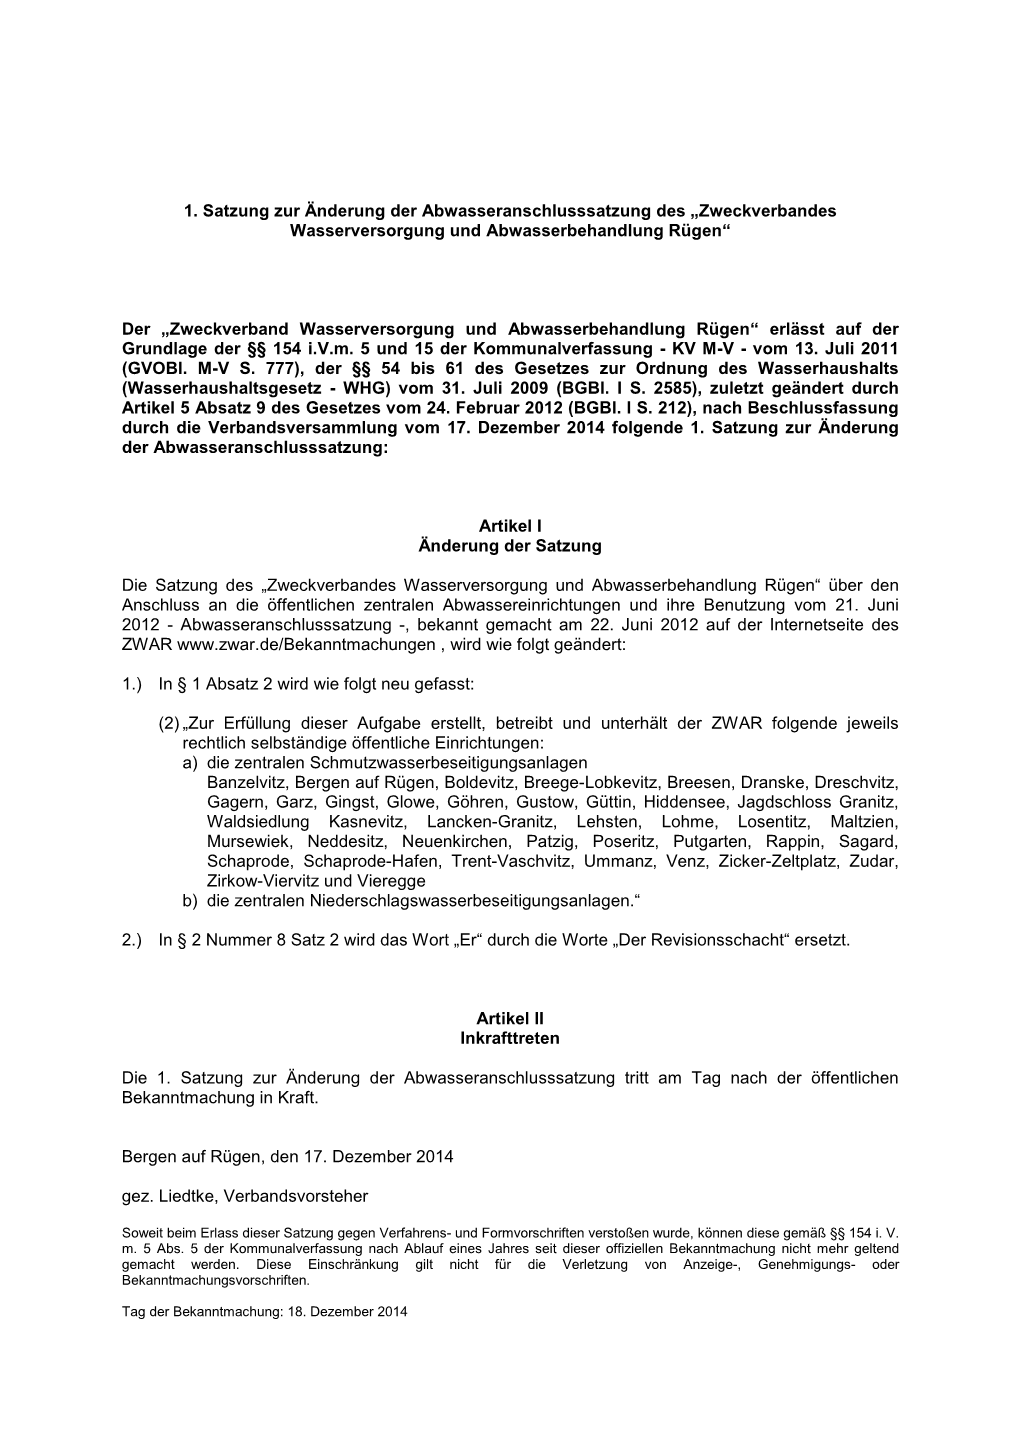 1. Satzung Zur Änderung Der Abwasseranschlusssatzung Des „Zweckverbandes Wasserversorgung Und Abwasserbehandlung Rügen“